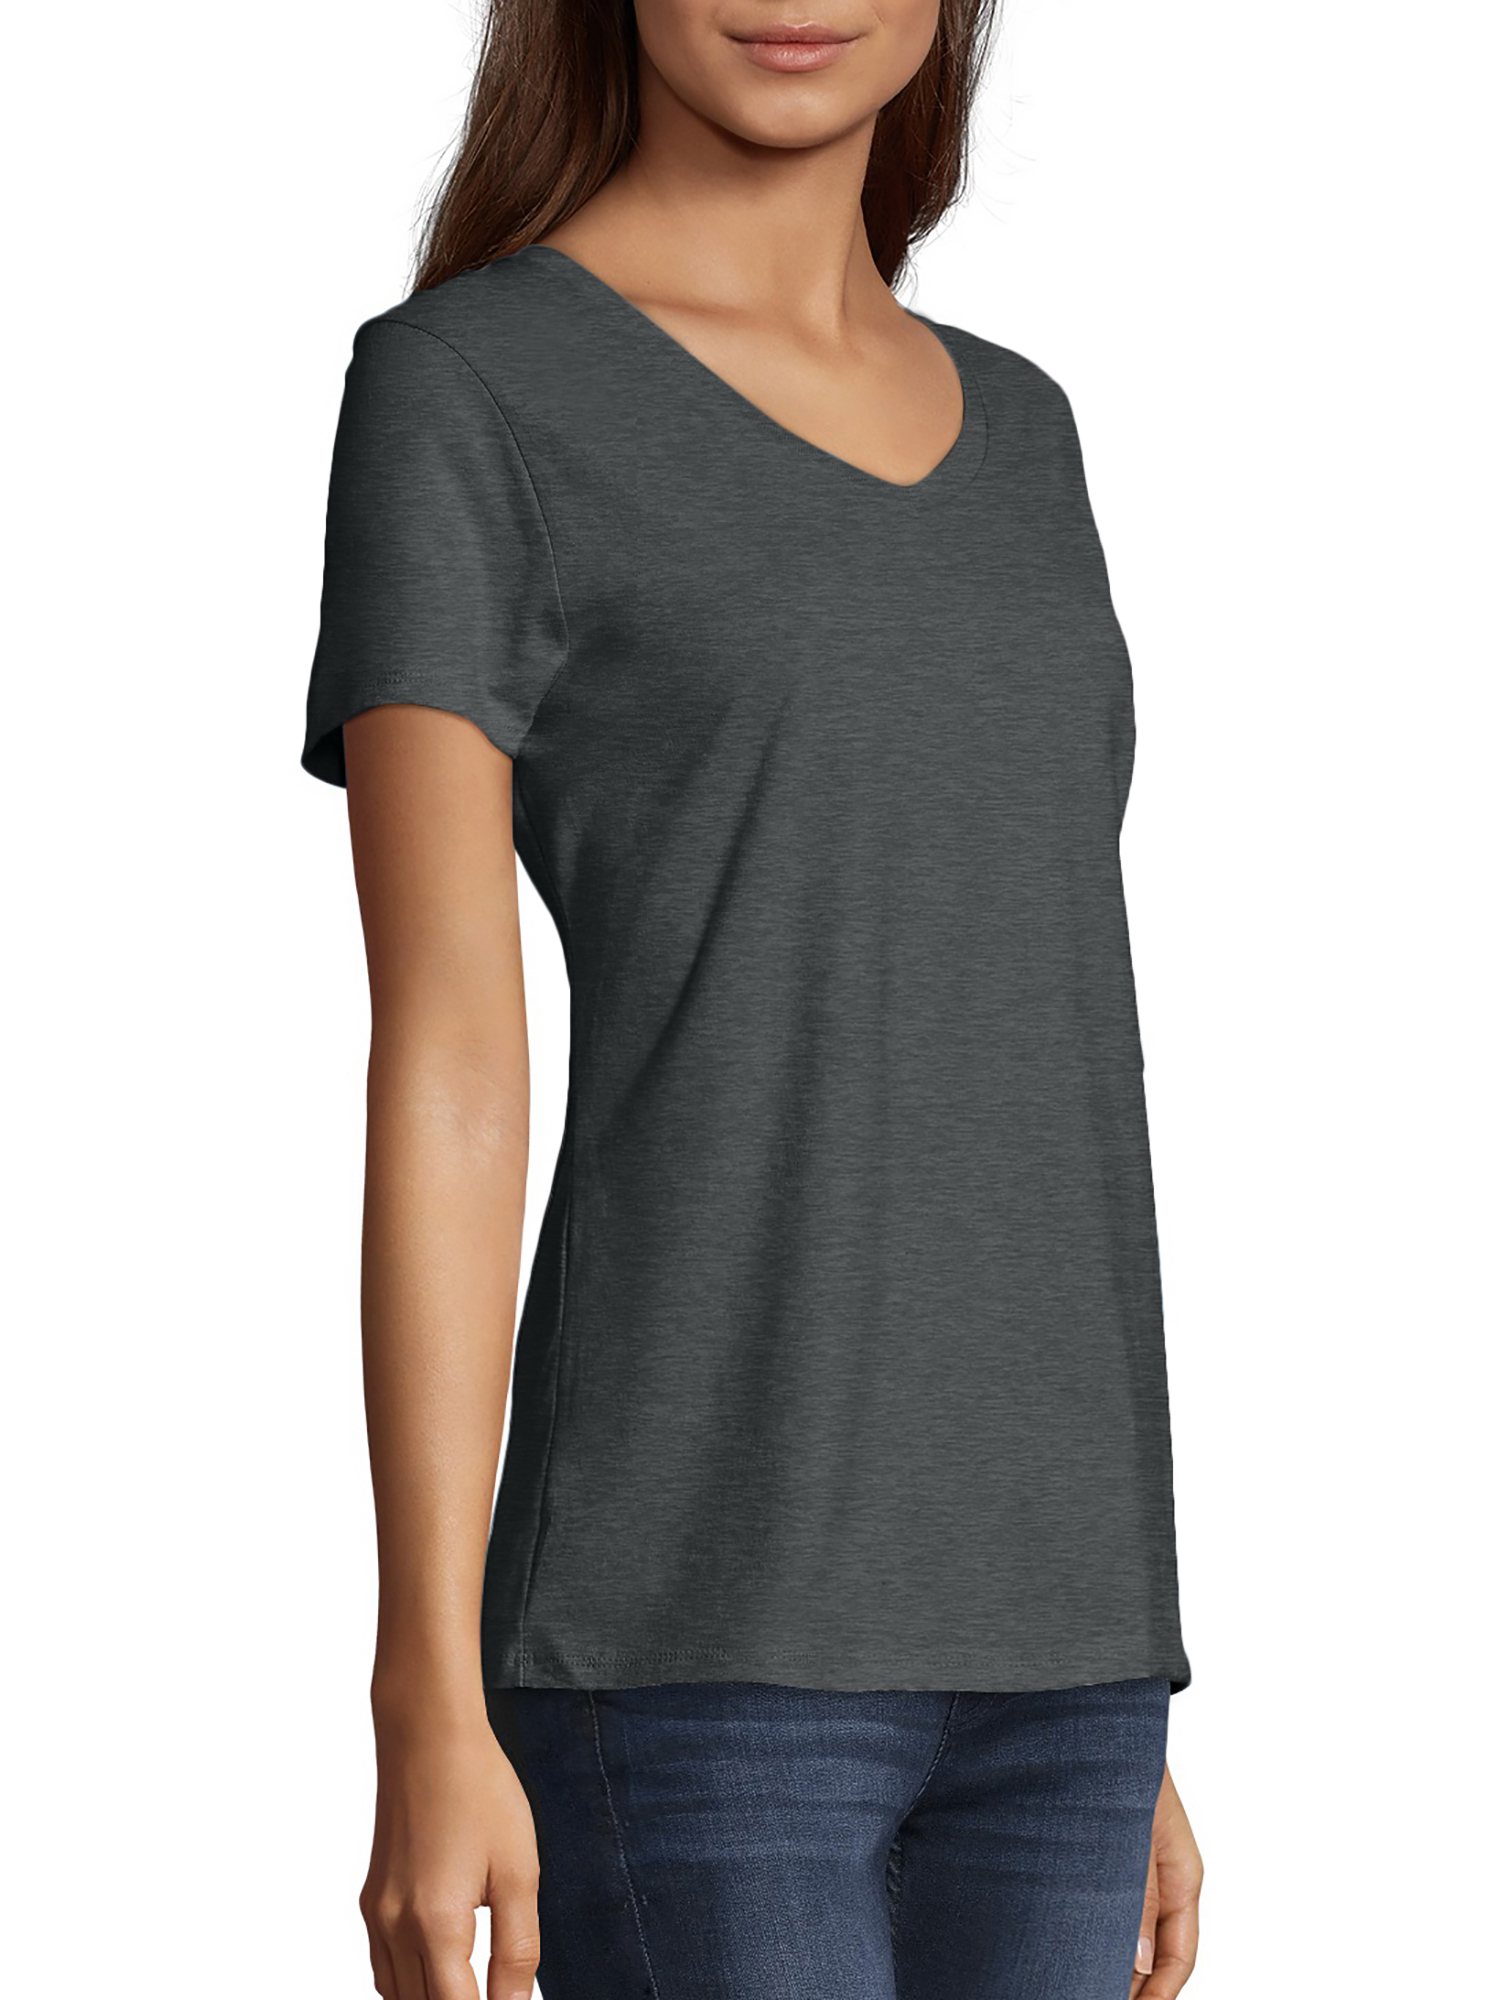 Hanes Women's Nano-T V-Neck T-Shirt - image 4 of 5